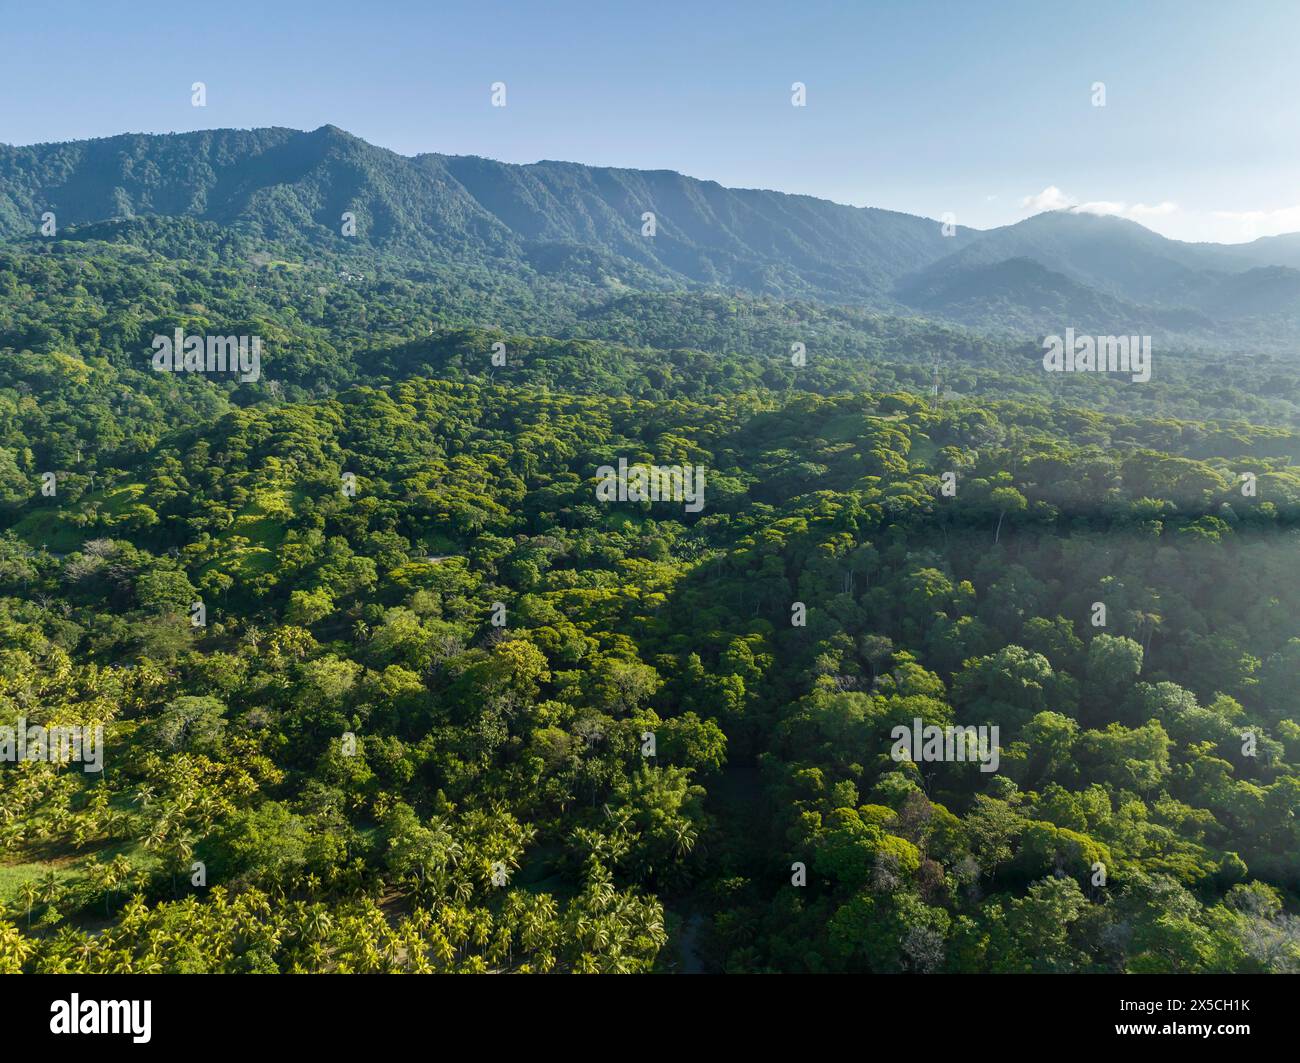 Vue aérienne, forêt tropicale et montagnes, province de Puntarenas, Costa Rica Banque D'Images